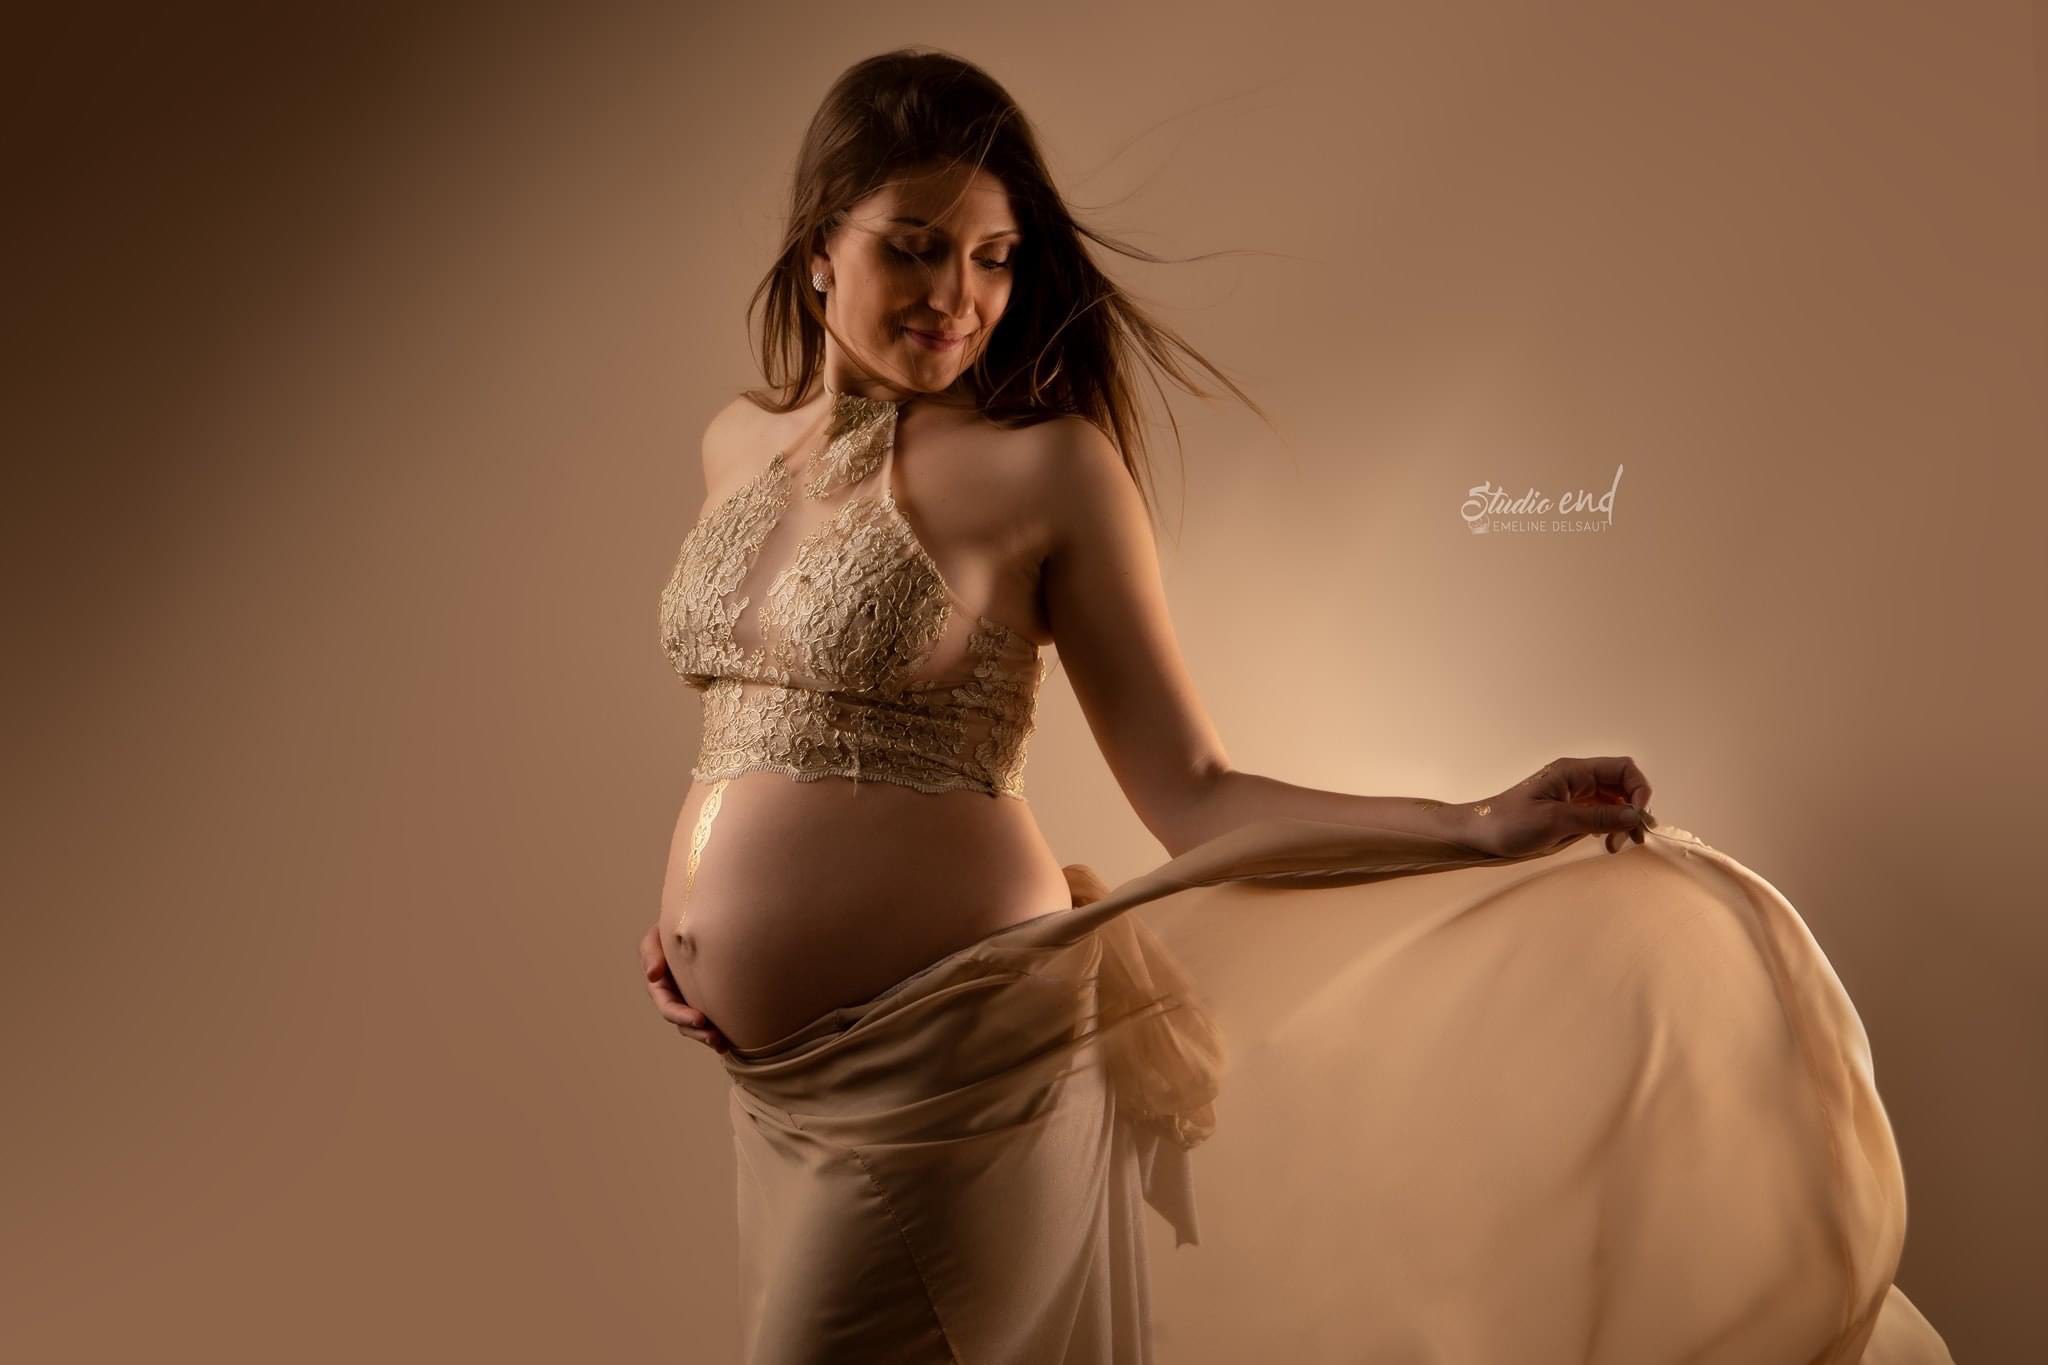 Photographe femme enceinte, photographe de grossesse à RODEZ au STUDIO END®